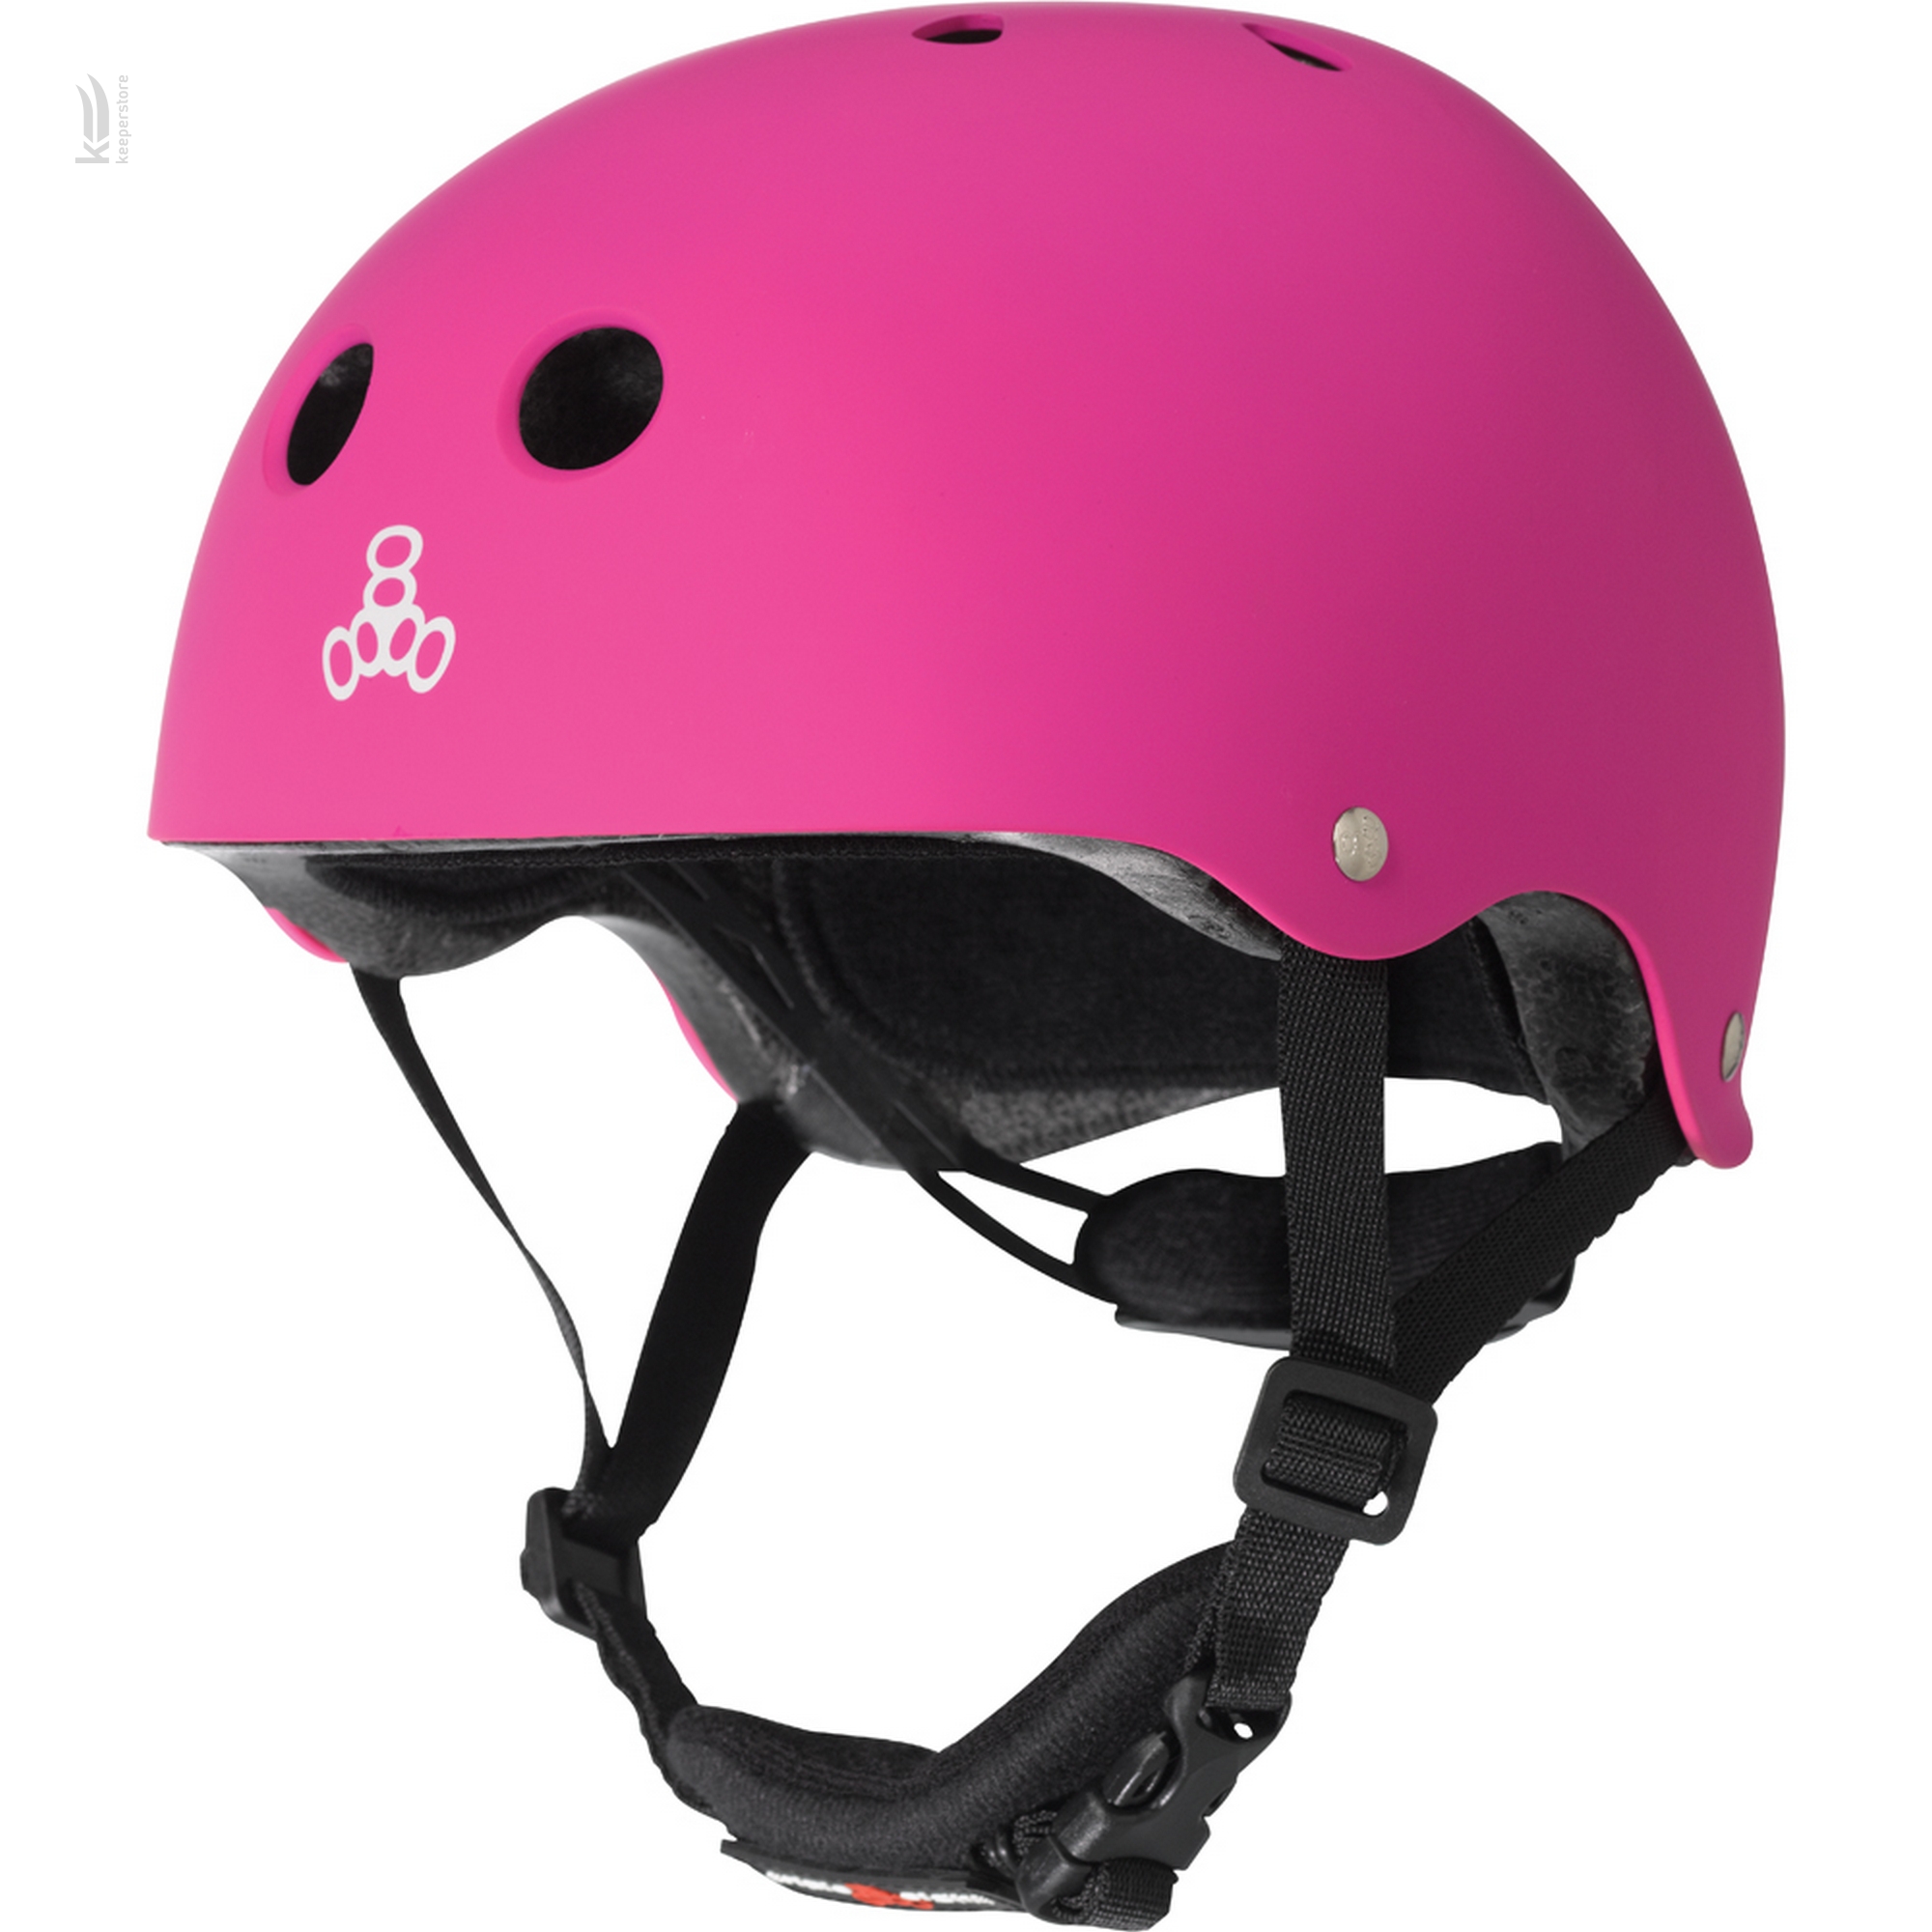 Купить розовый защитный шлем Triple8 Lil 8 Pink в Киеве